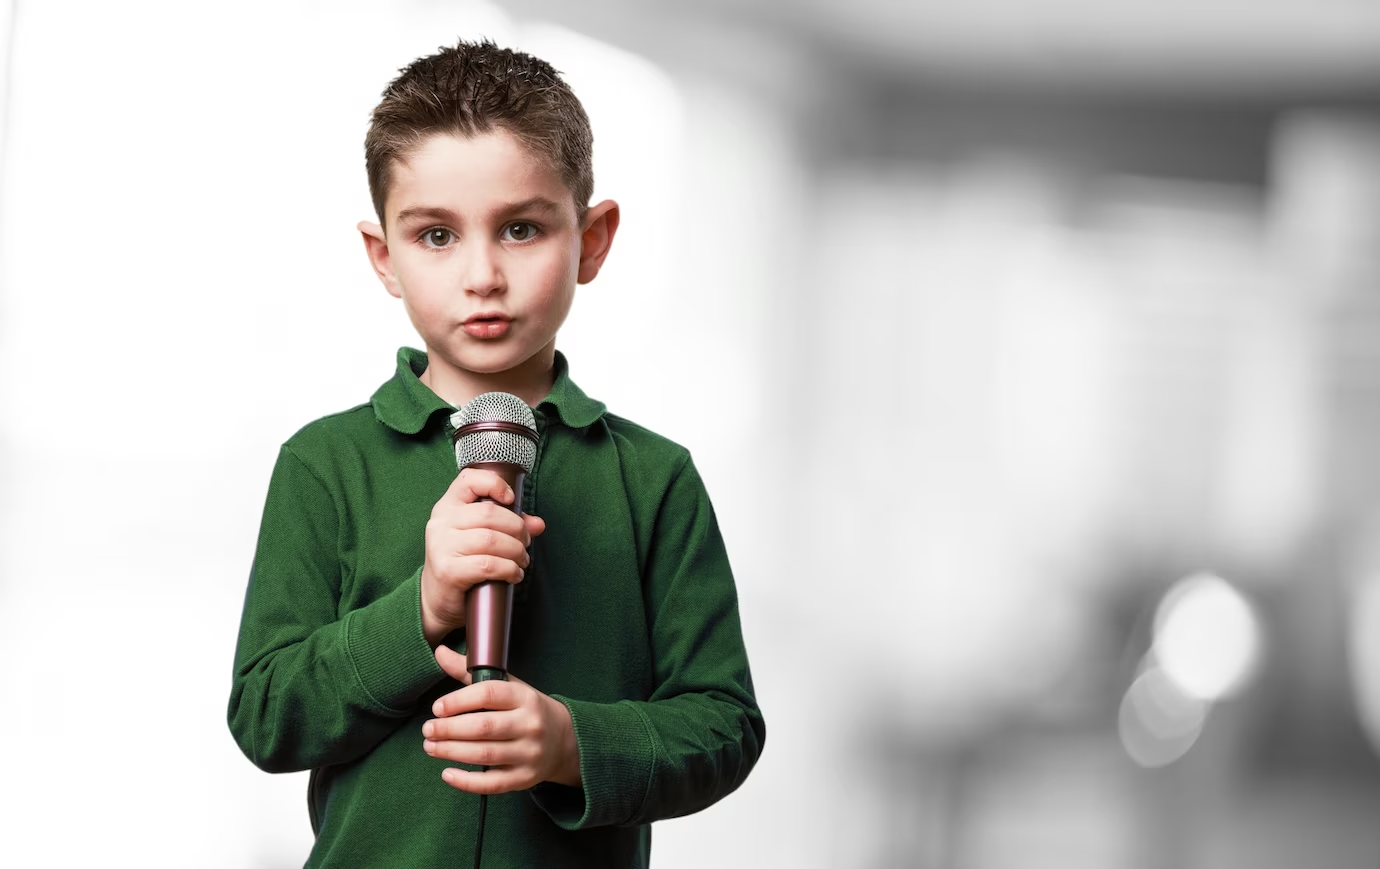 A kid giving a speech